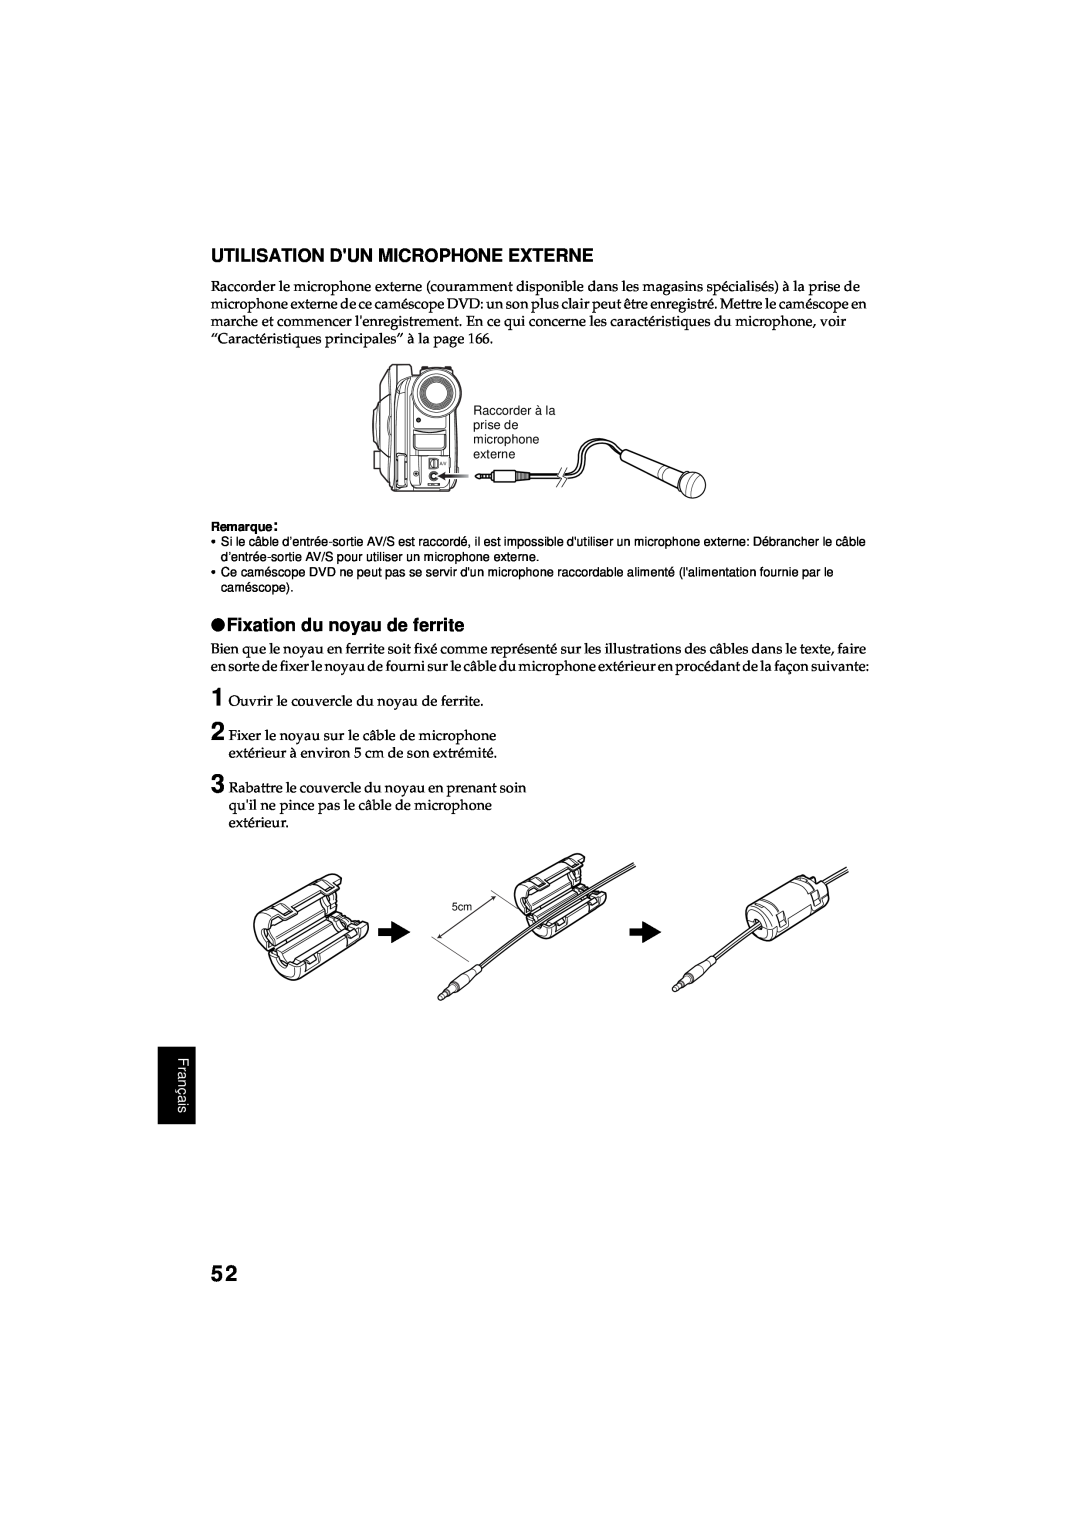 Hitachi DZ-MV380A manual Utilisation Dun Microphone Externe, Fixation du noyau de ferrite, Français 